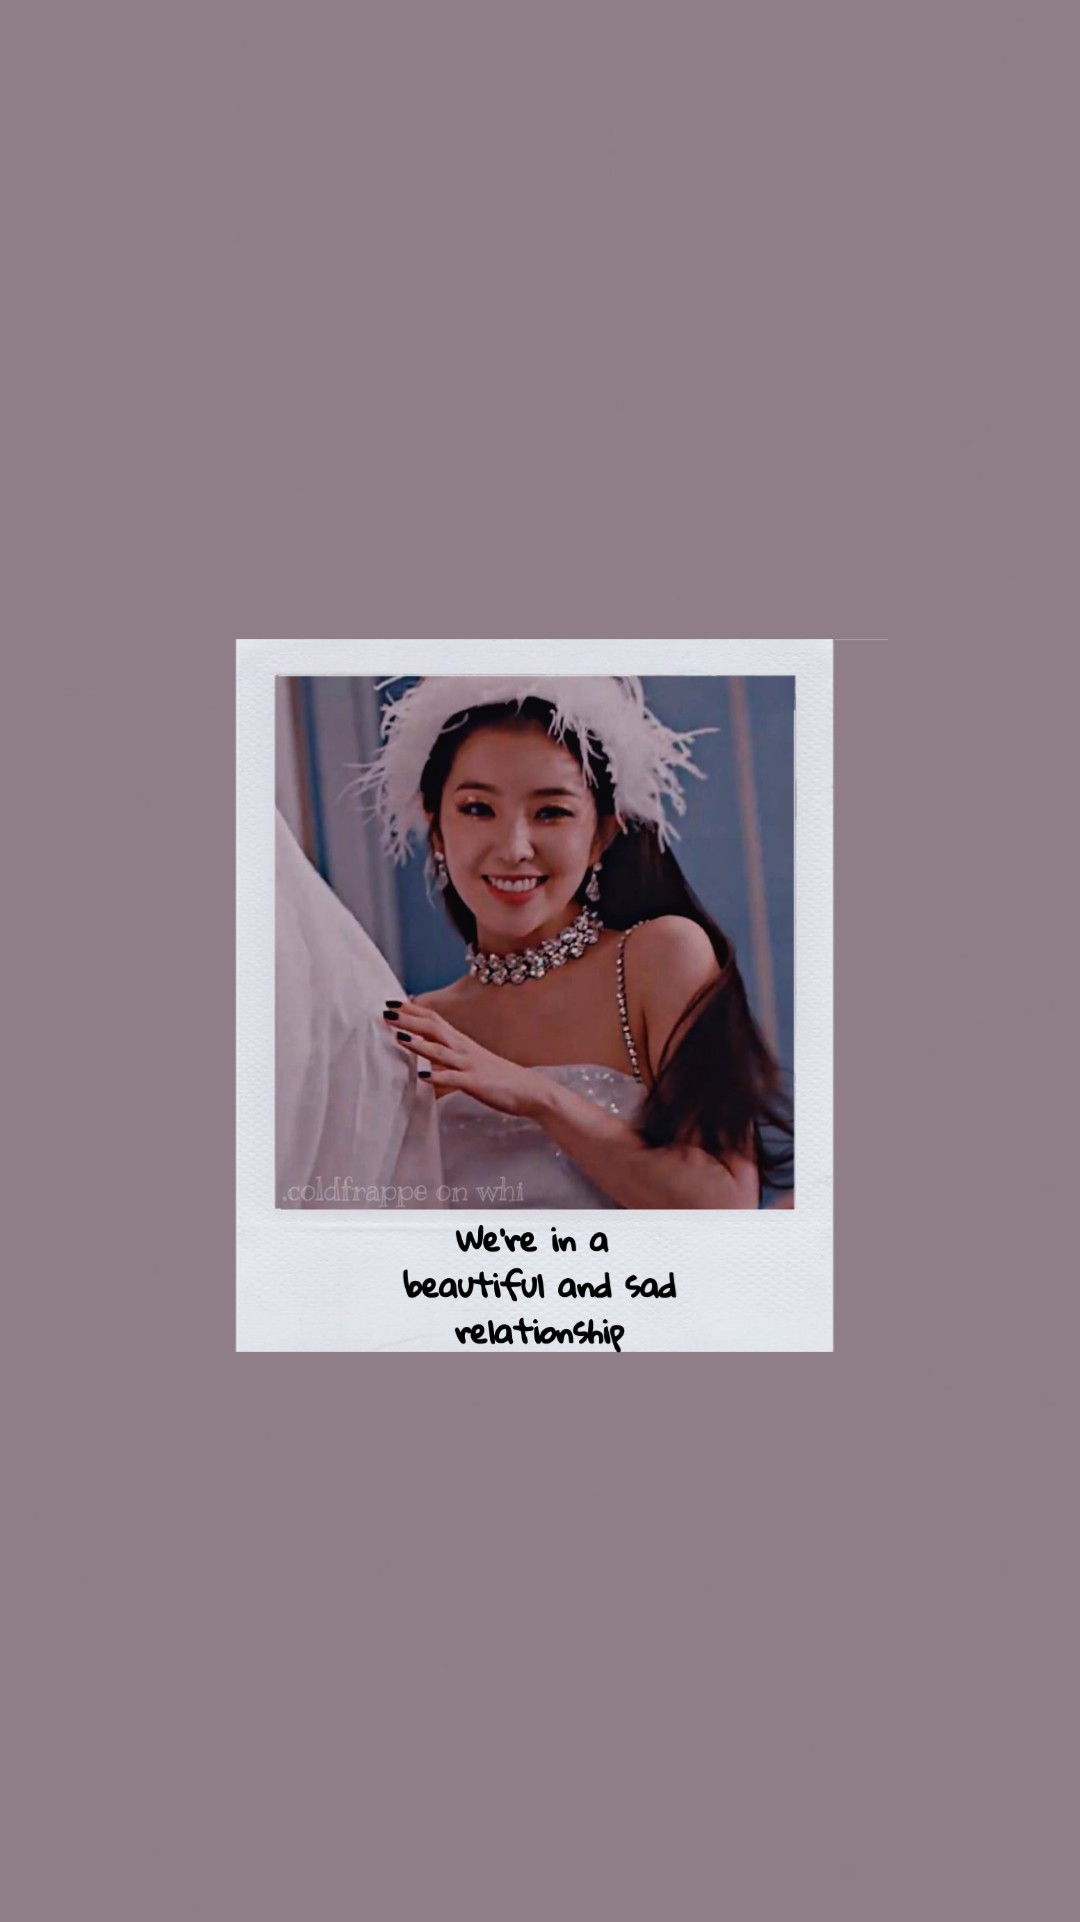 Aesthetic, Kpop, And Red Velvet Image - Girl - HD Wallpaper 